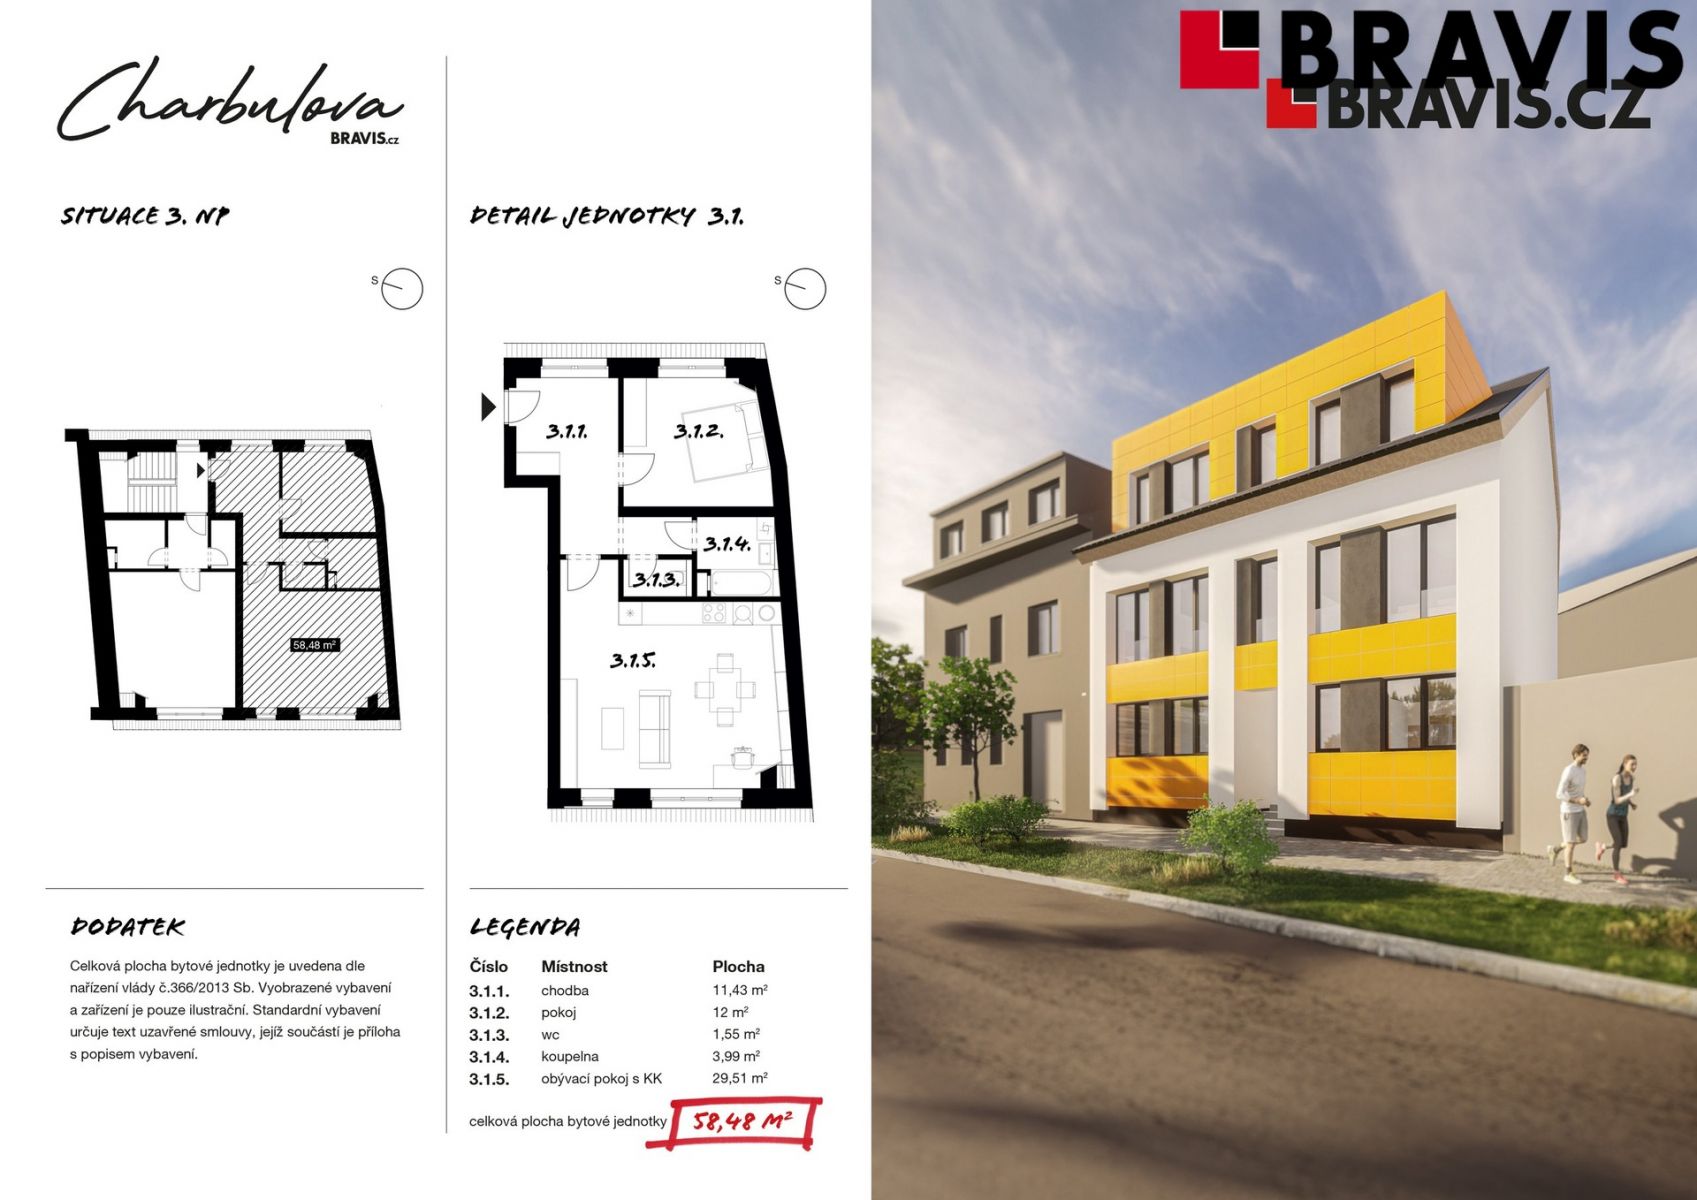 Prodej novostavby bytu 2+kk, ulice Charbulova, Brno - Černovice, včetně parkovacího stání, obrázek č. 3